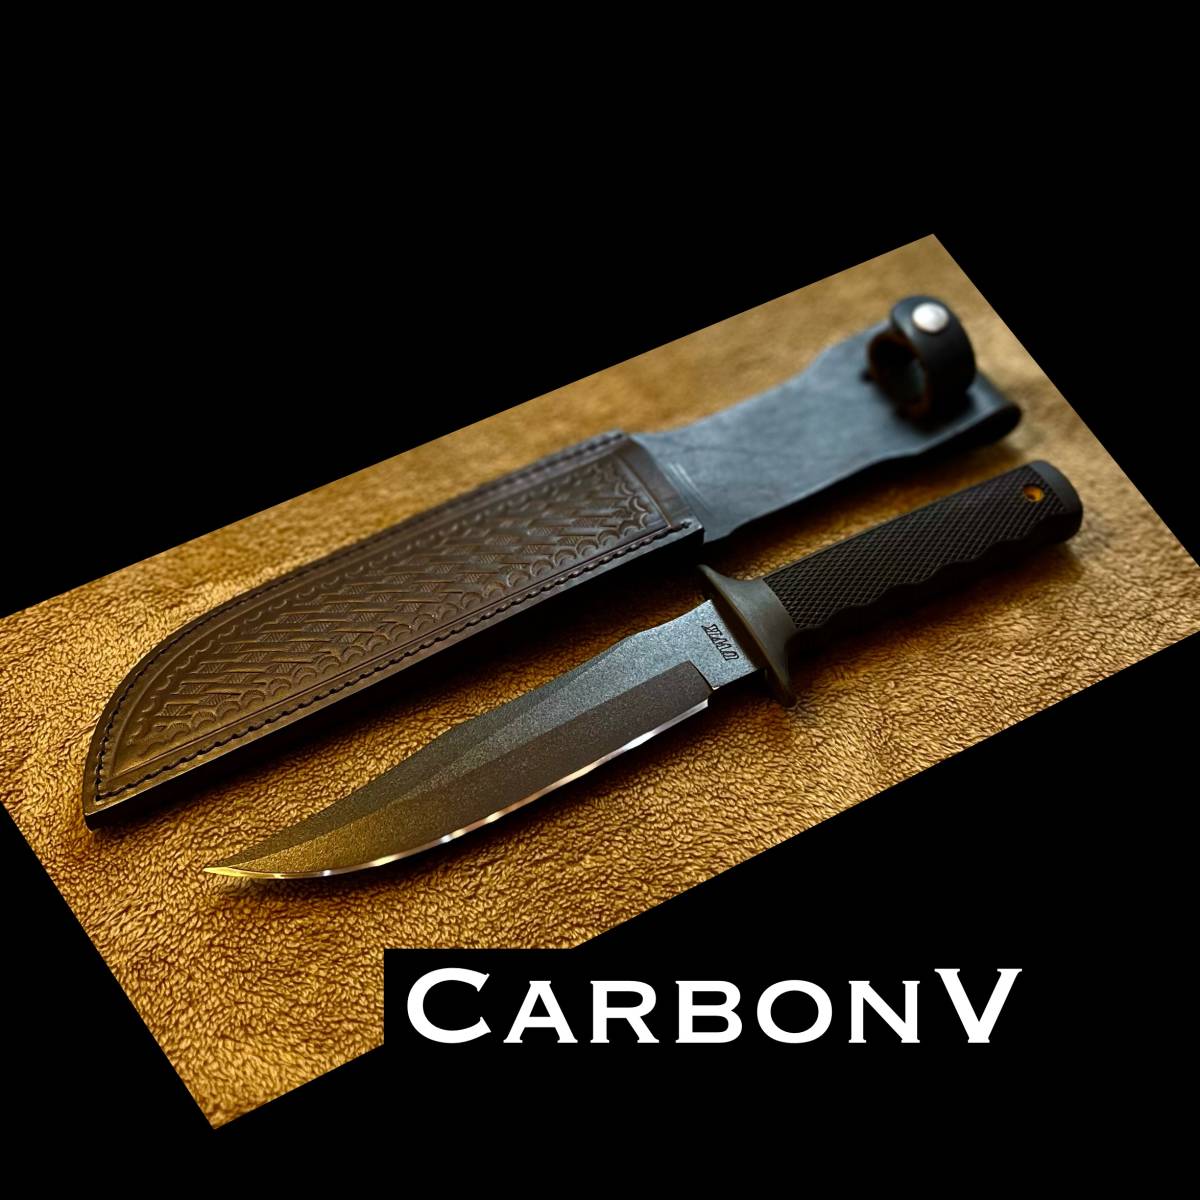 【廃番・刃付け処理済】アメリカ製 CARBONV COLD STEEL MADE IN USA ナイフ コールドスチール カーボンV キャンプ 野営 狩猟